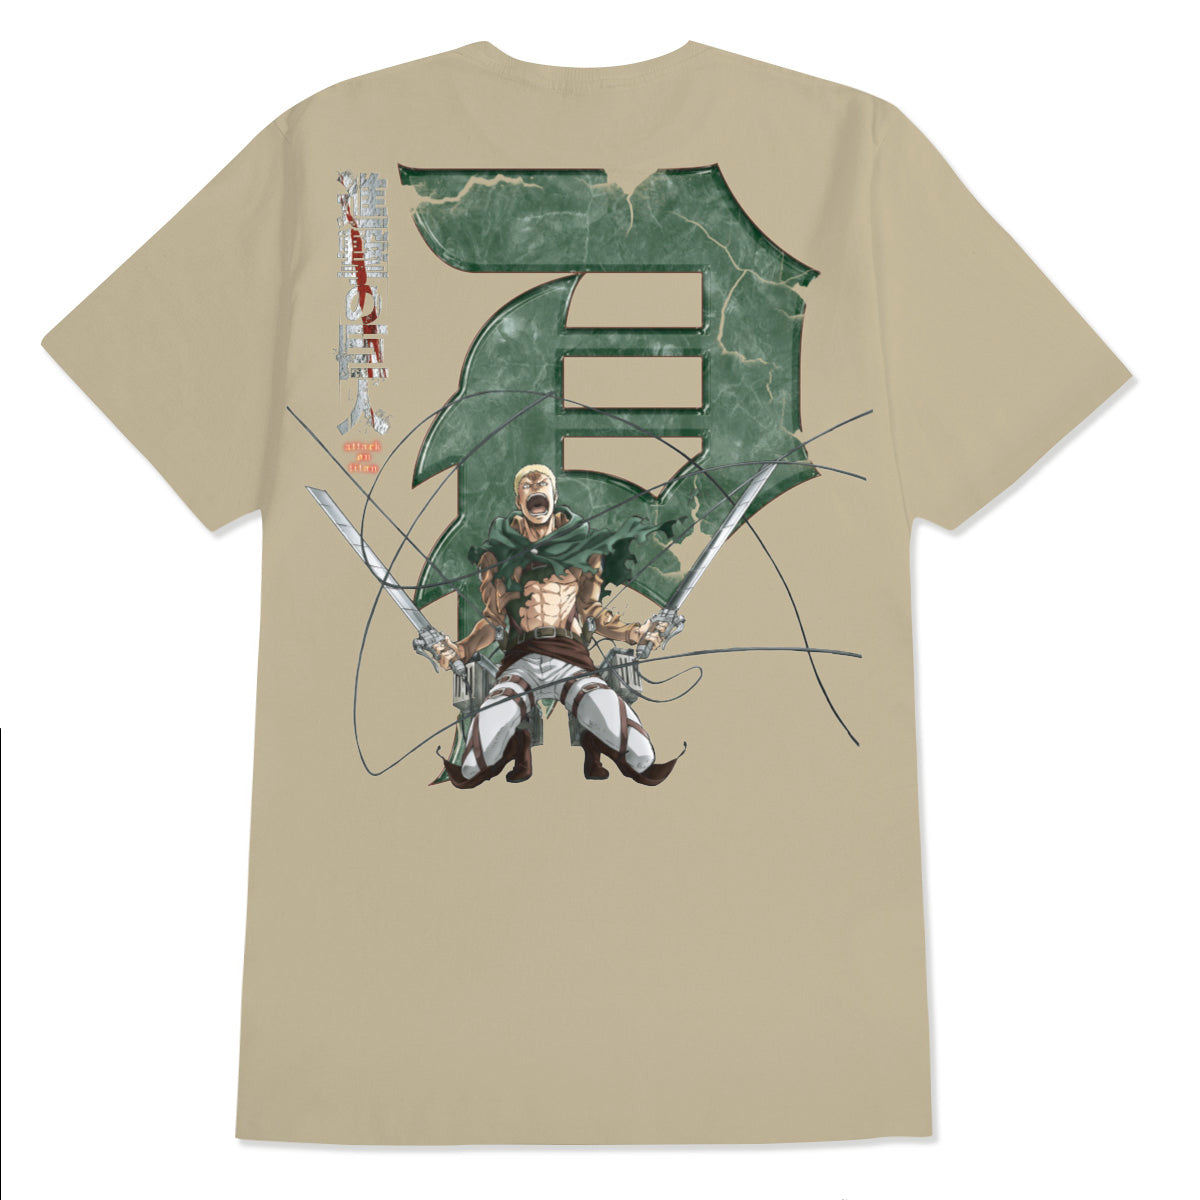 Primitive x Titans Reiner Dirty P T-Shirt - Sand image 1